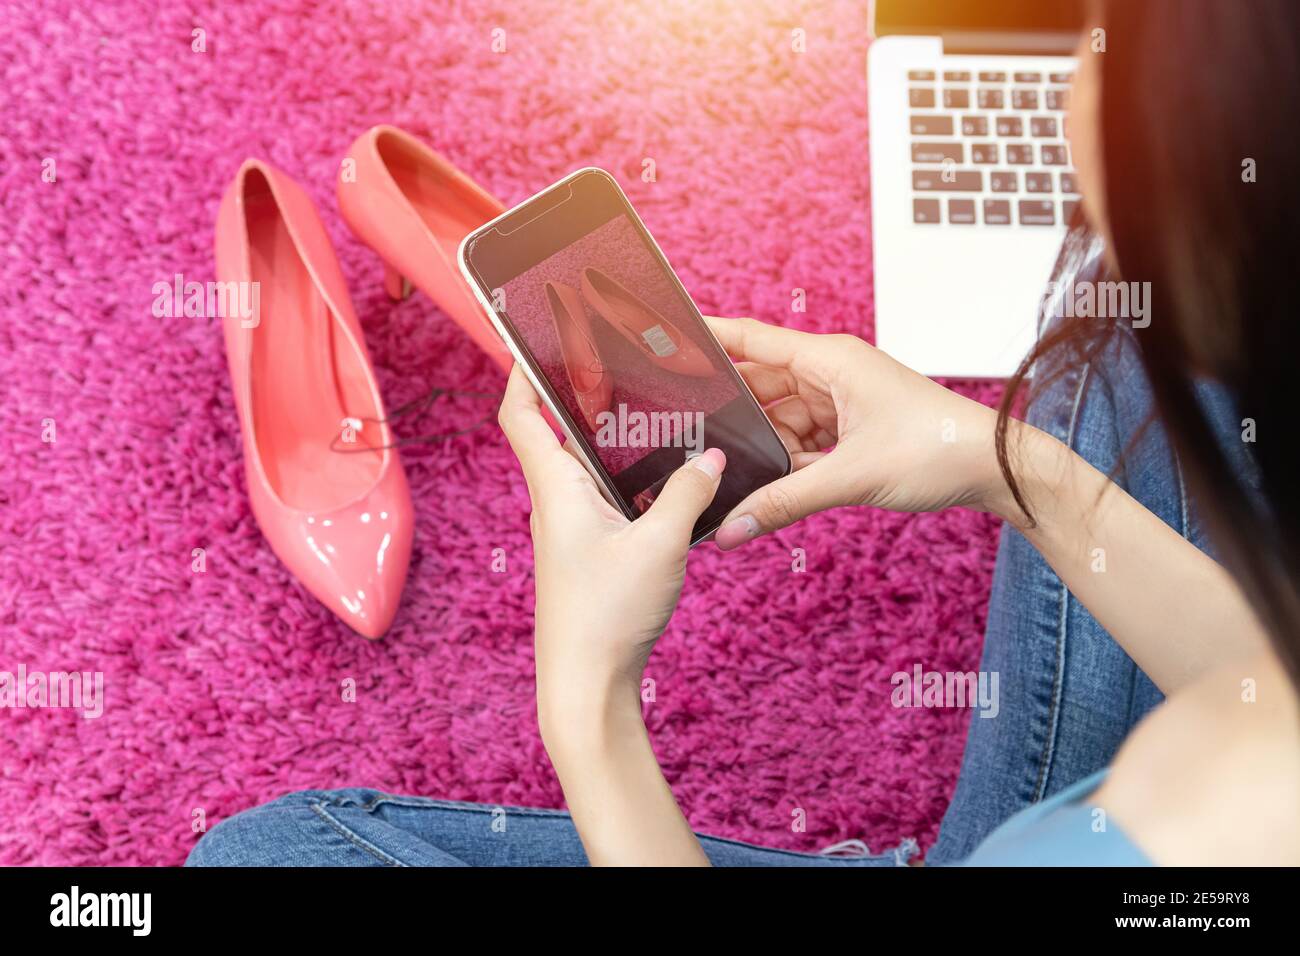 venta de idea en línea concepto. vendedor en línea utilizar teléfono móvil tomar una foto de zapatos de tacón alto para subir a la tienda de compras en línea sitio web. Foto de stock